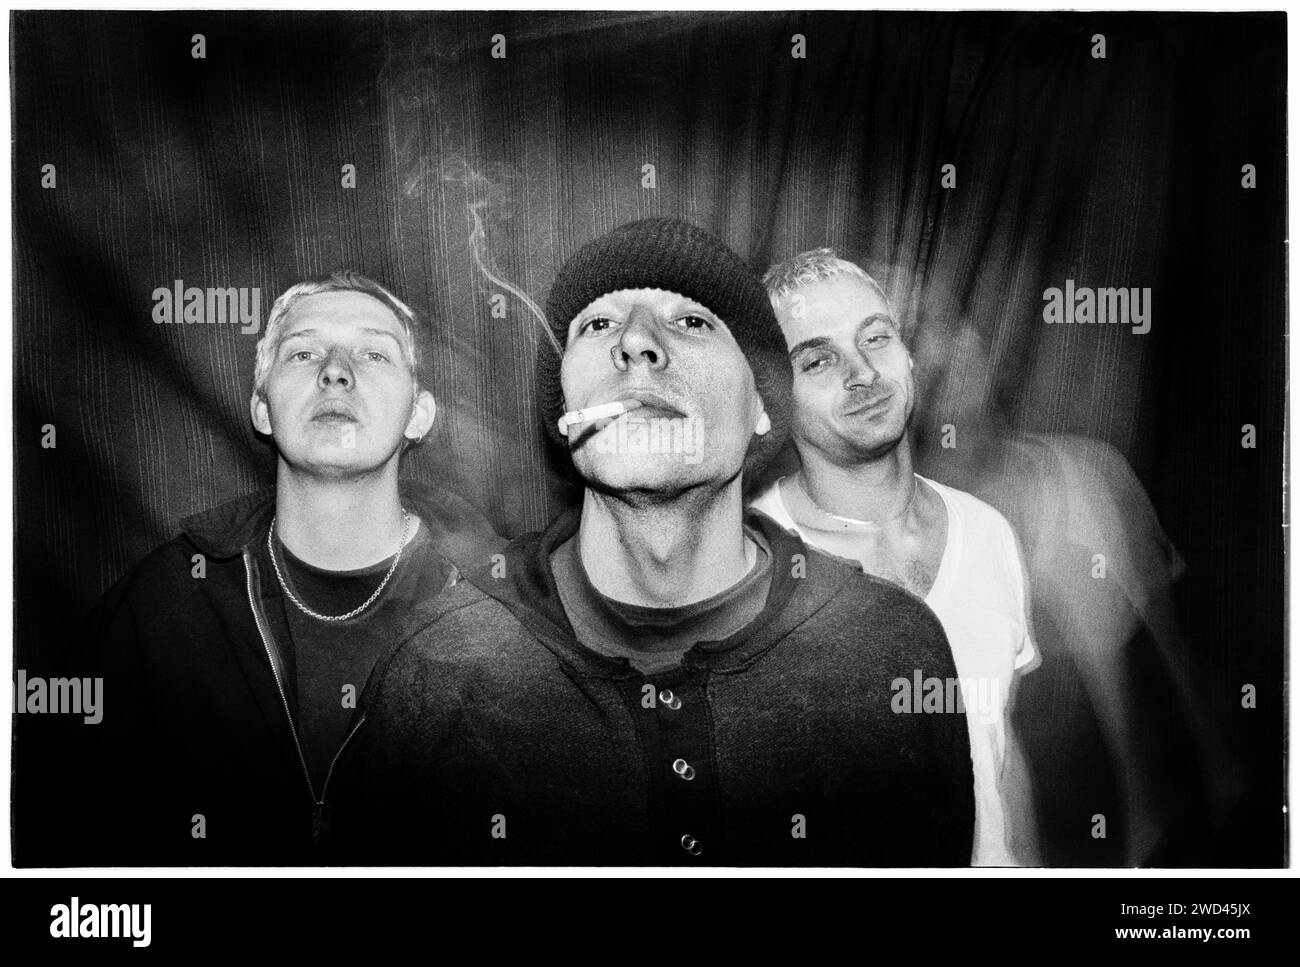 Die Punkband S*M*A*S*H (SMASH) fotografierte Backstage bei Newport TJs, UK am 13. Oktober 1994. Foto: Rob Watkins. INFO: SMASH, eine britische Punkband aus den 90ern, hat sich dem DIY-Ethos angeschlossen. Ihr energiegeladener Sound, angetrieben von politisch aufgeladenen Texten, fand eine Anhängerschaft. Hymnen wie „I Want to Kill Someone“ und „Shame“ fesselten den rebellischen Geist der Punkszene während ihrer aktiven Jahre. Stockfoto